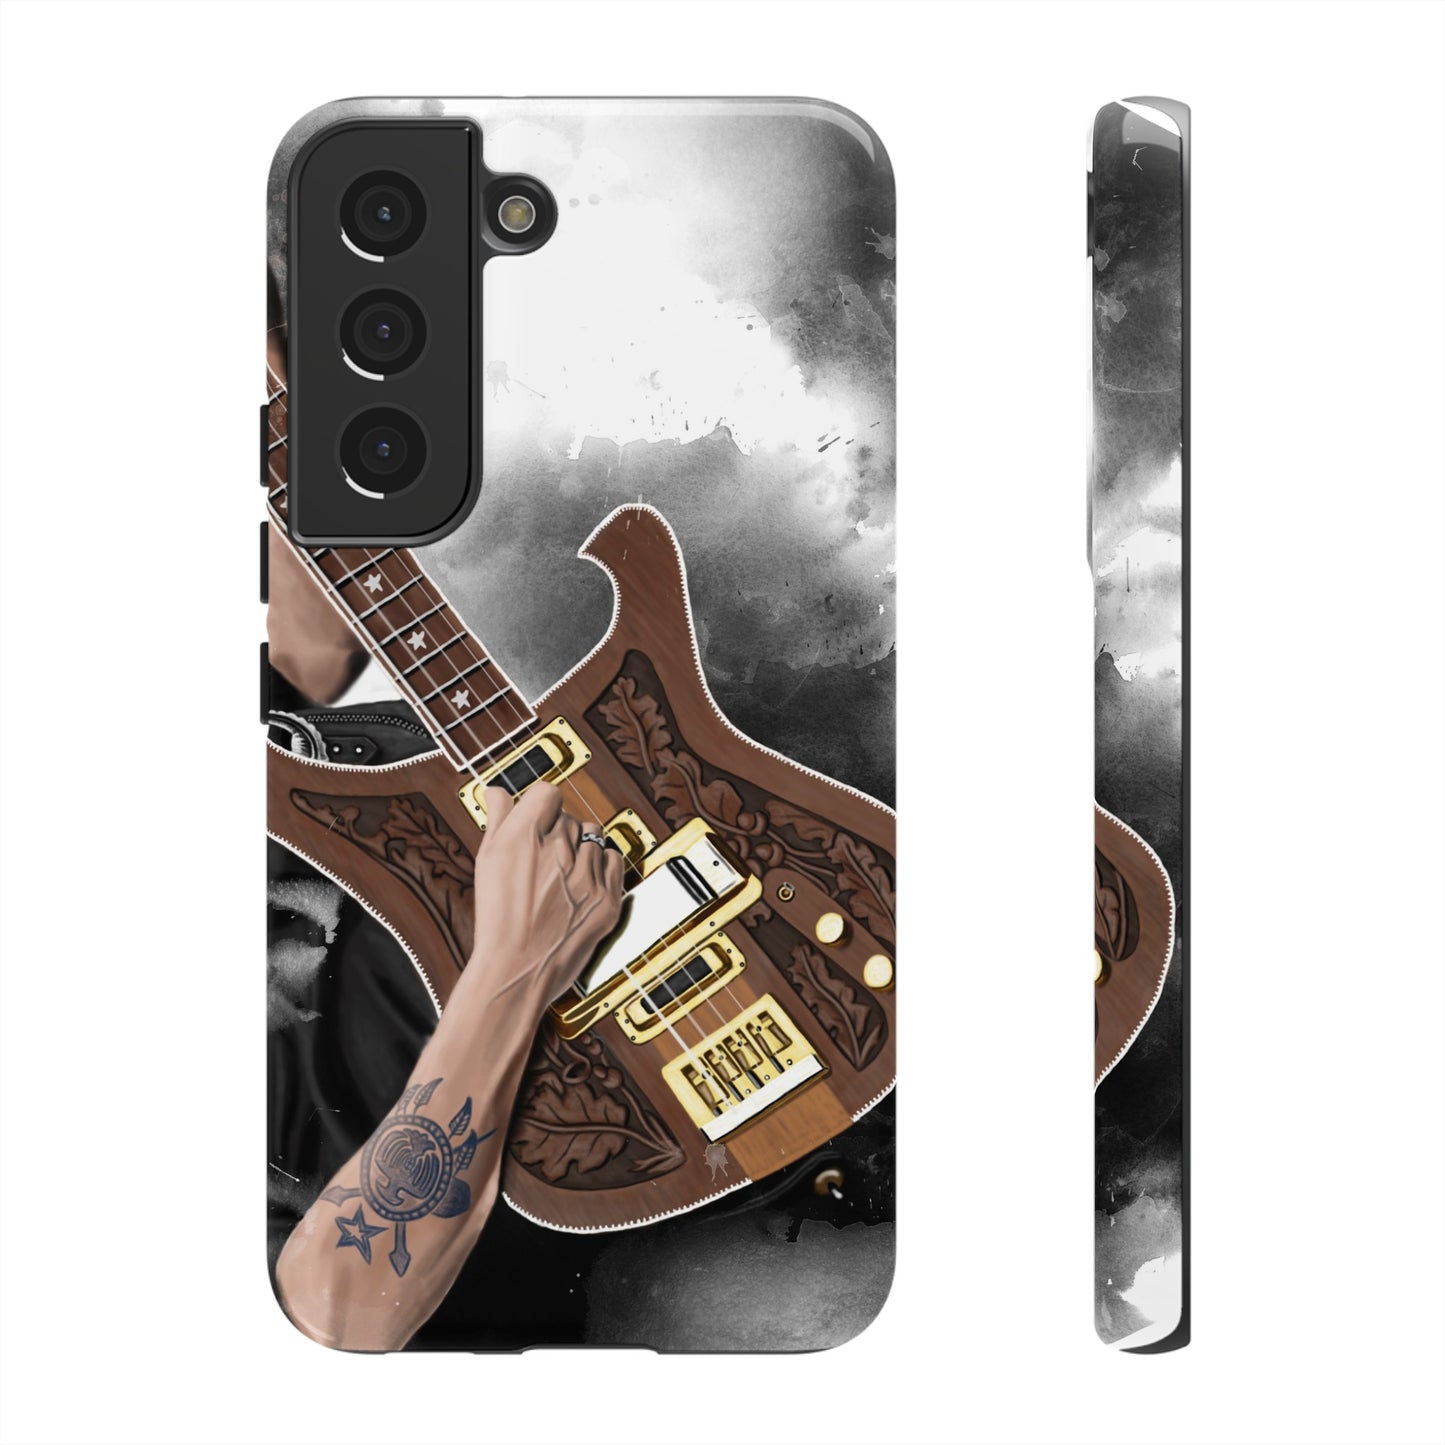 Lemmy's Bass Guitar Art On Tough Phone Cases